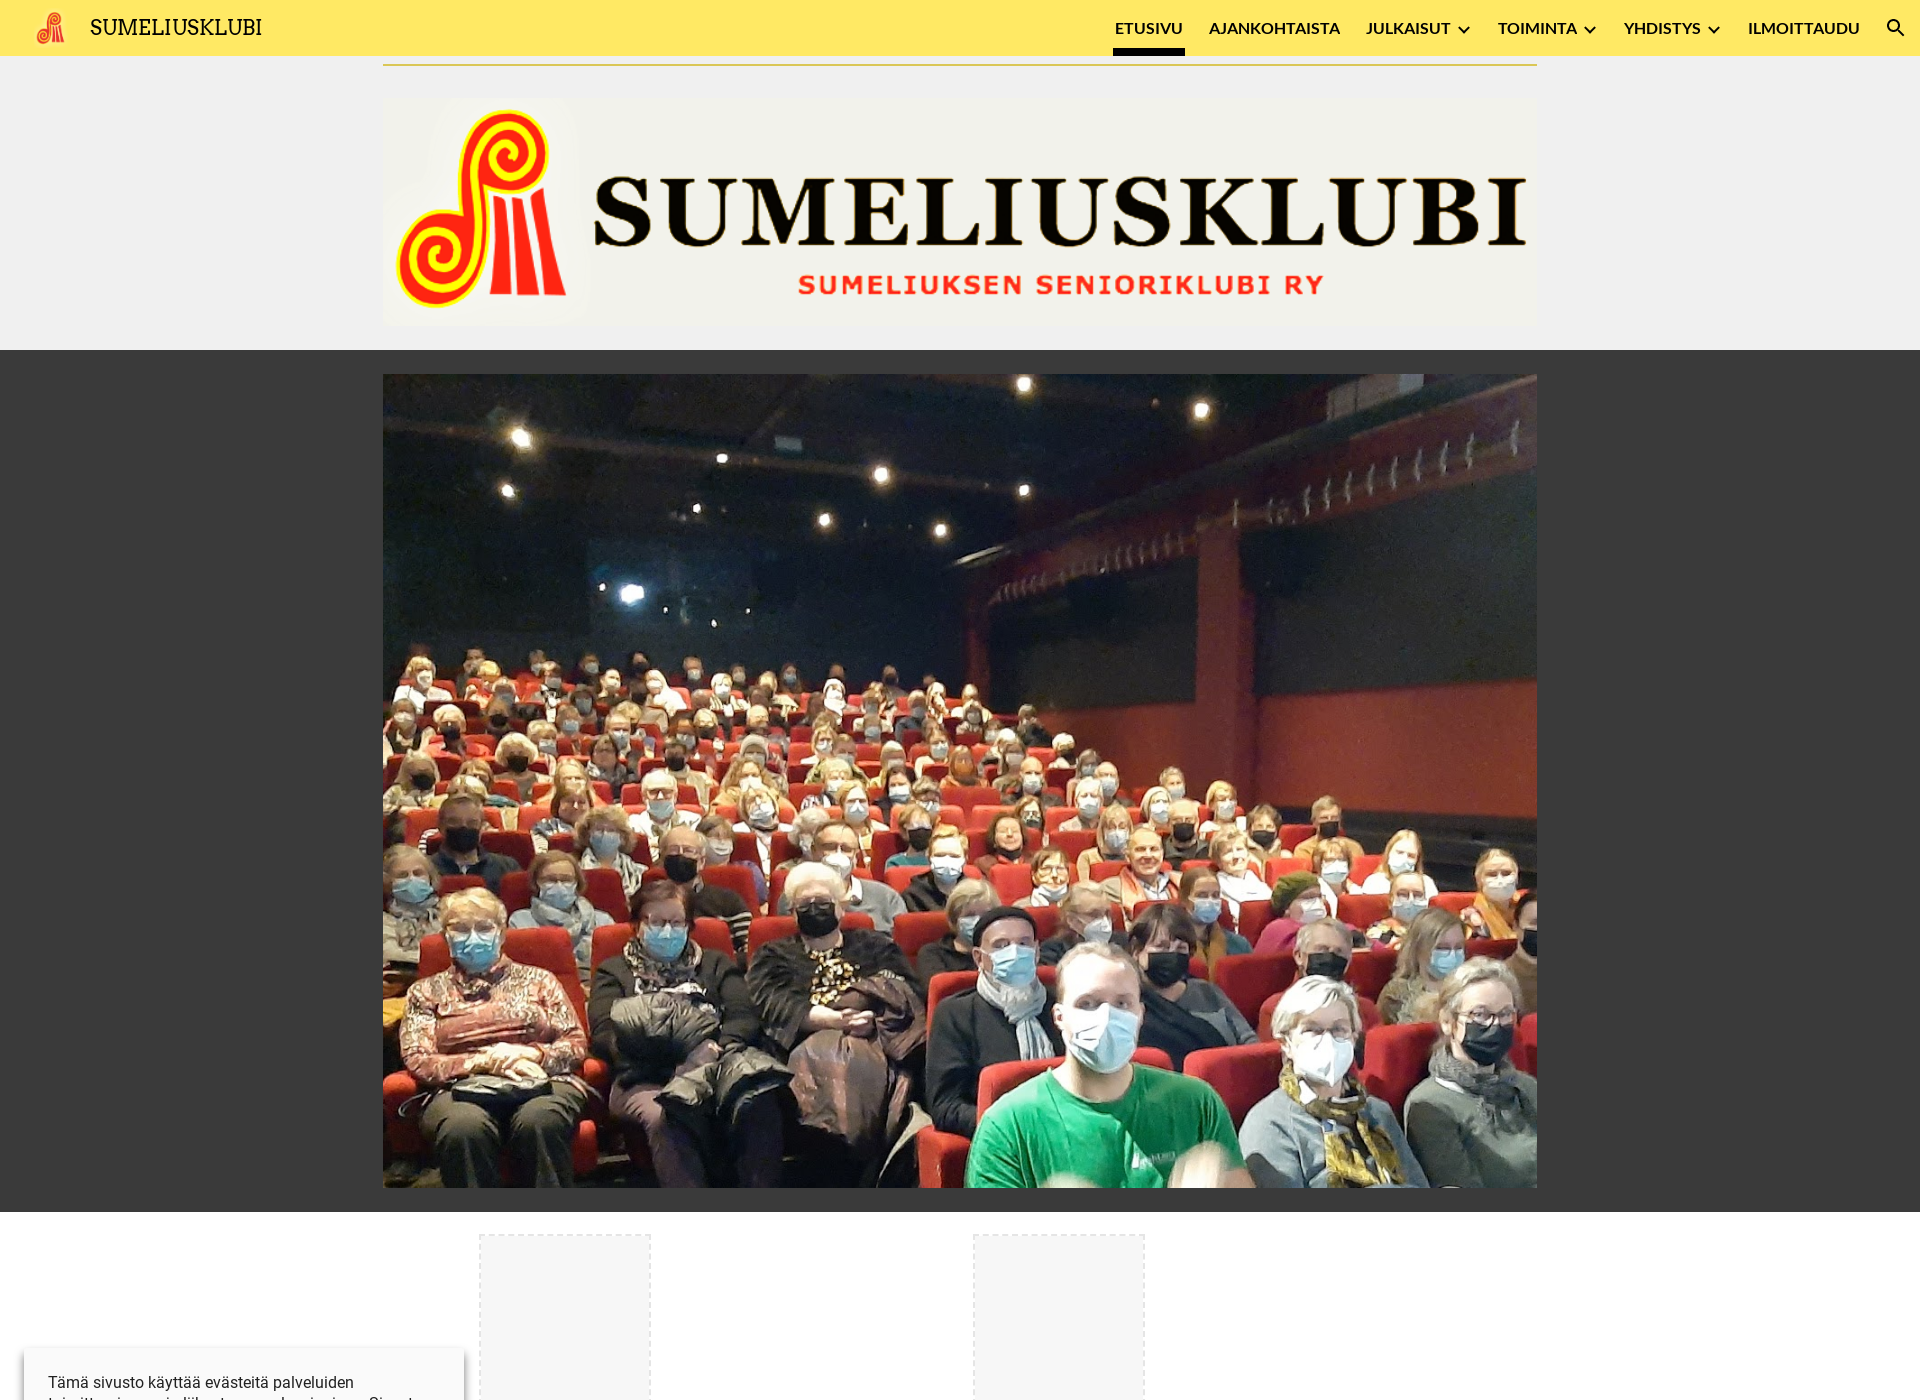 Näyttökuva sumeliusklubi.fi